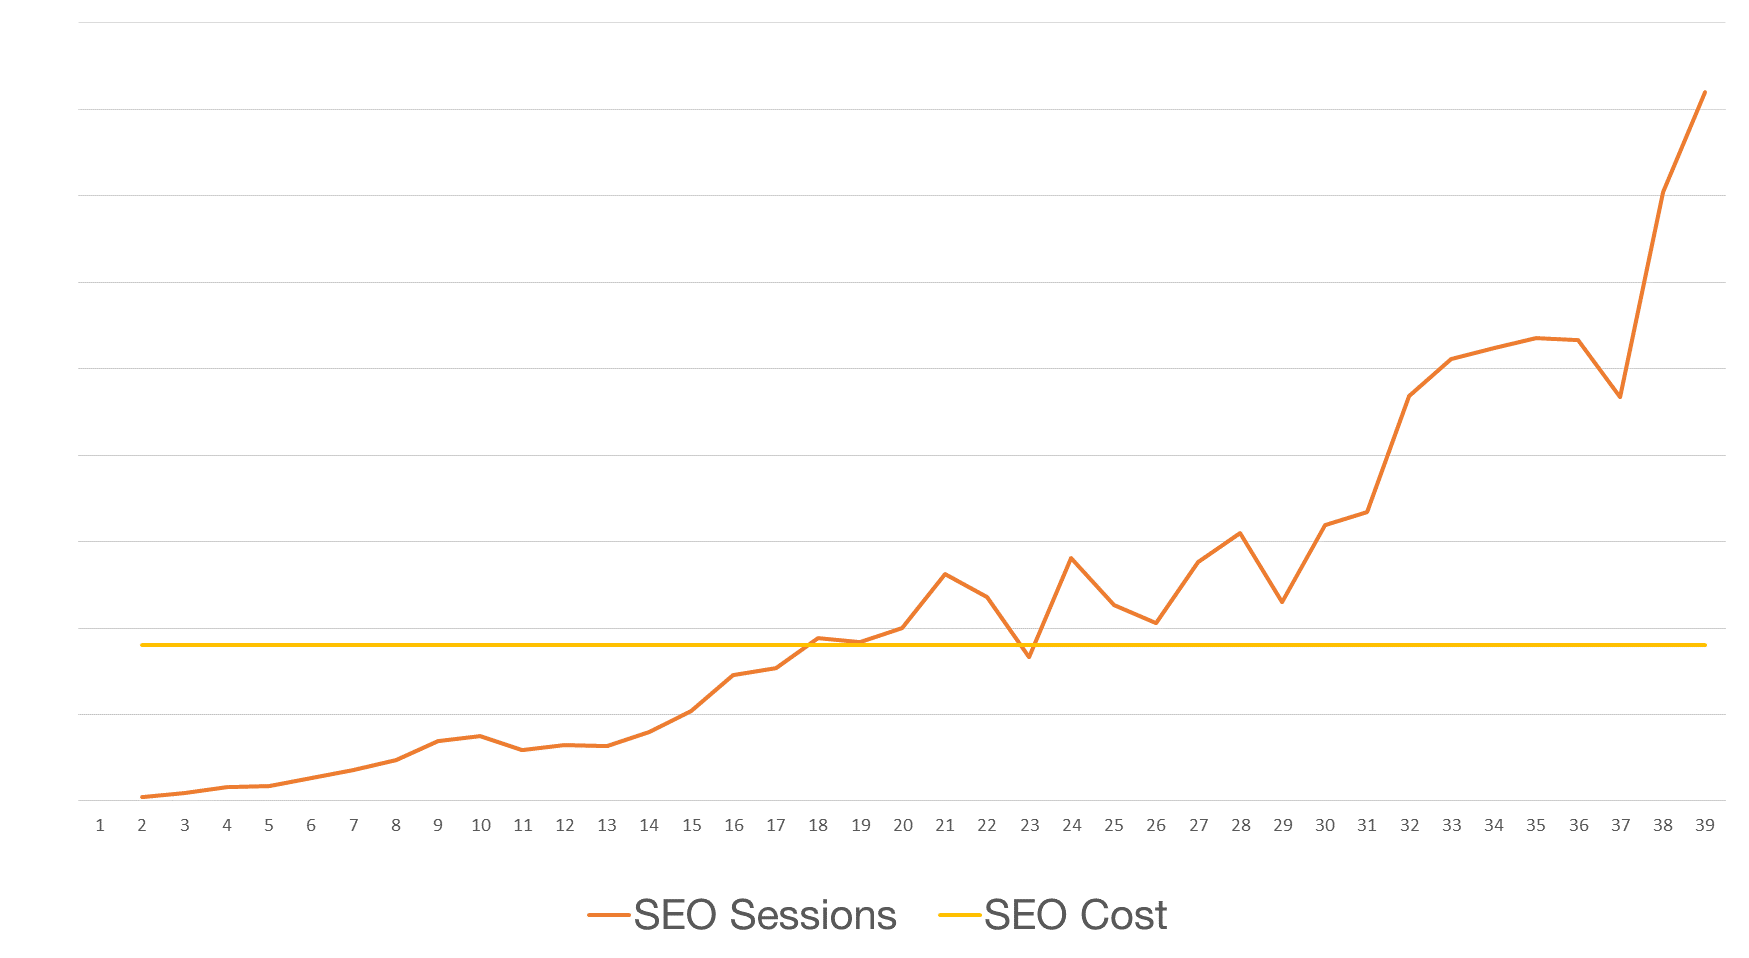 Search Advocacy | SEO Cost vs Sessions